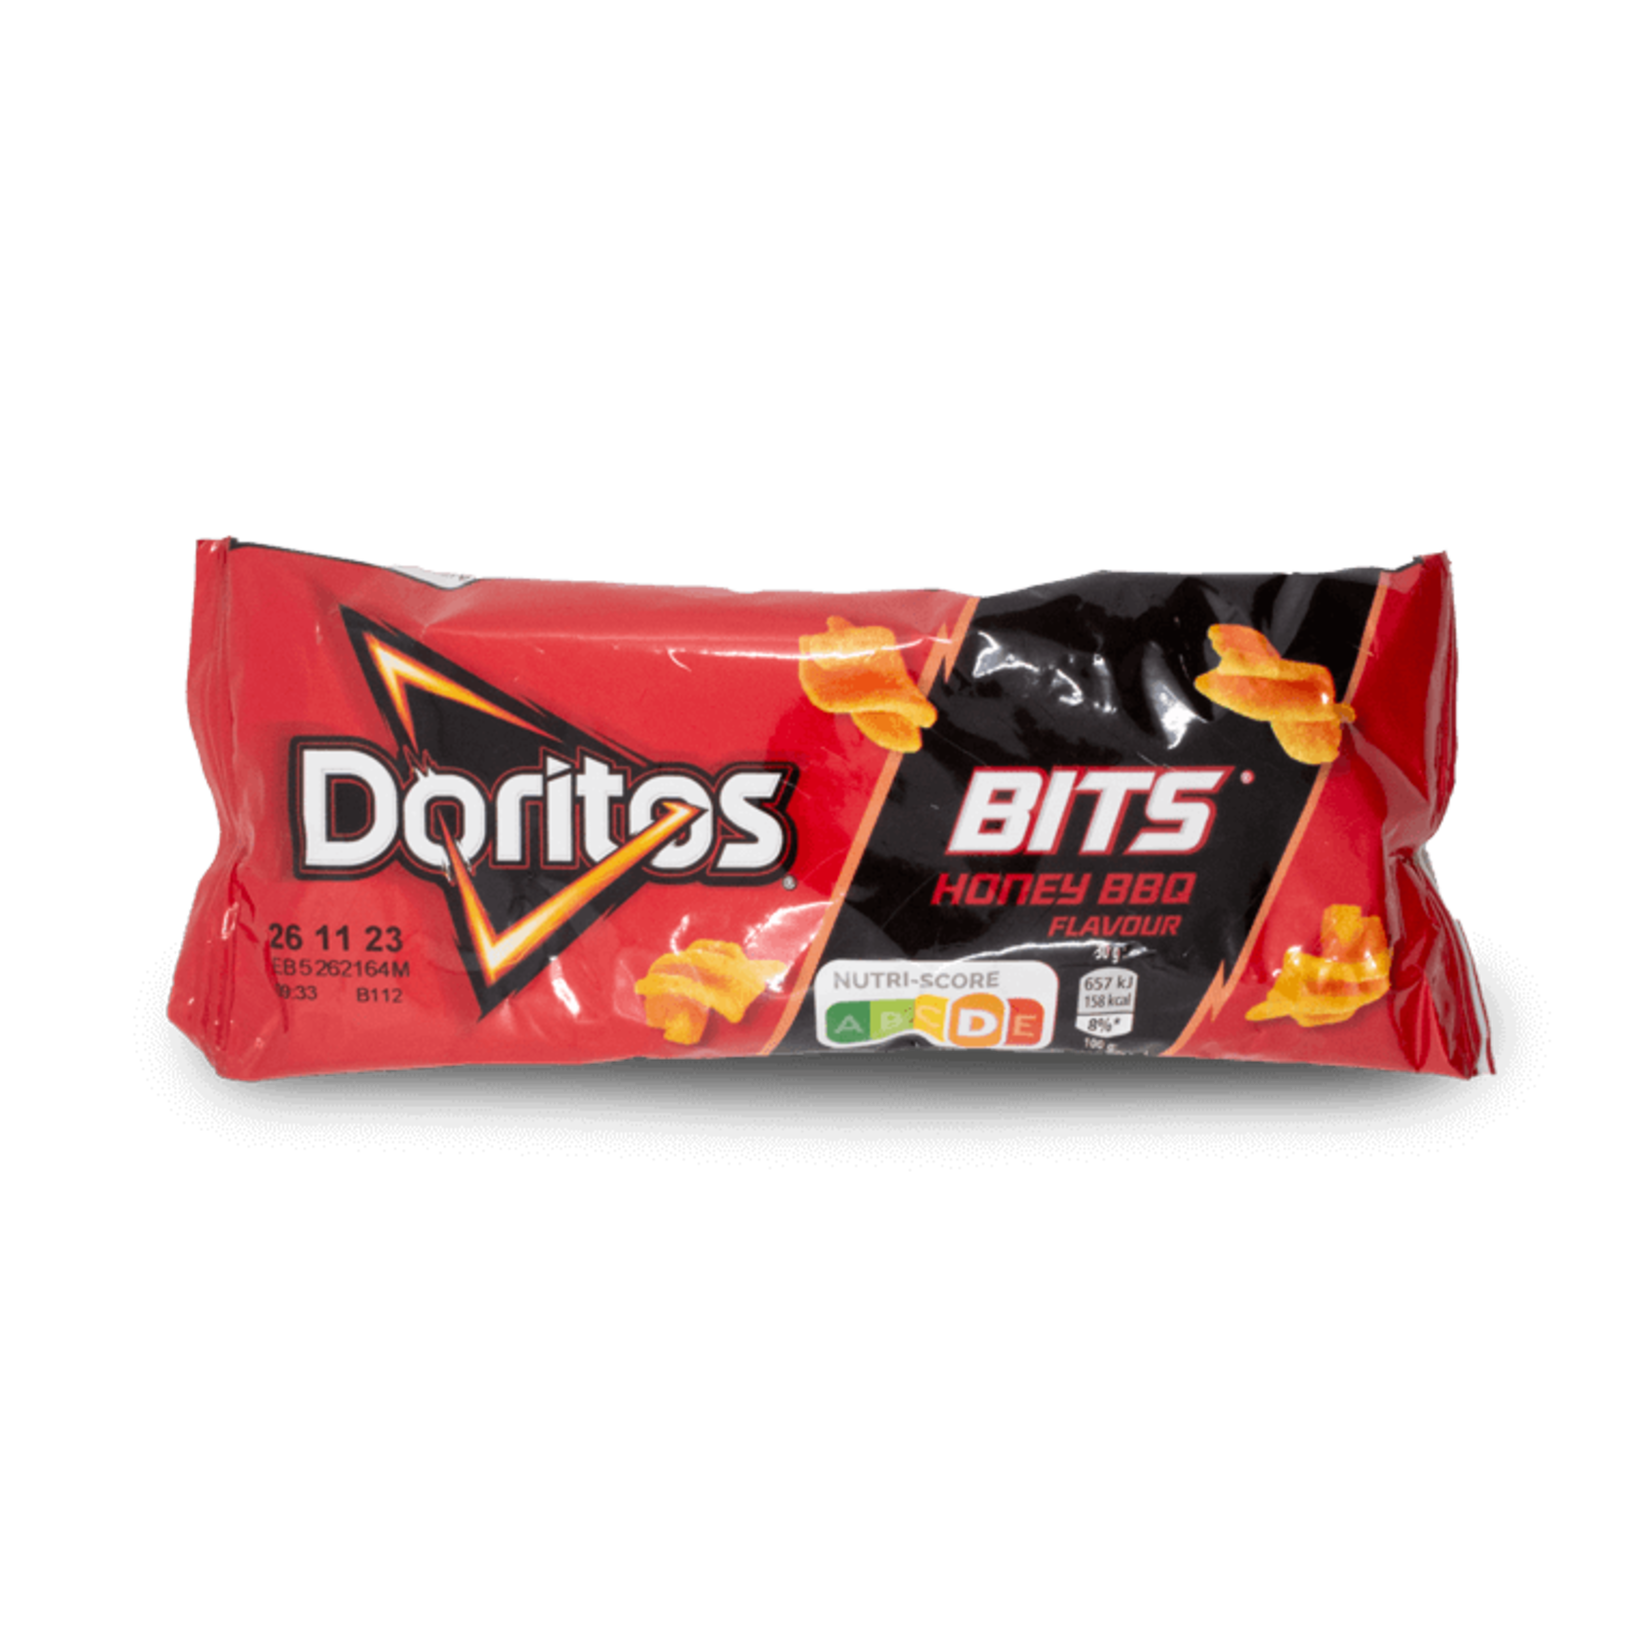 Doritos Doritos Bits Honey BBQ 30g